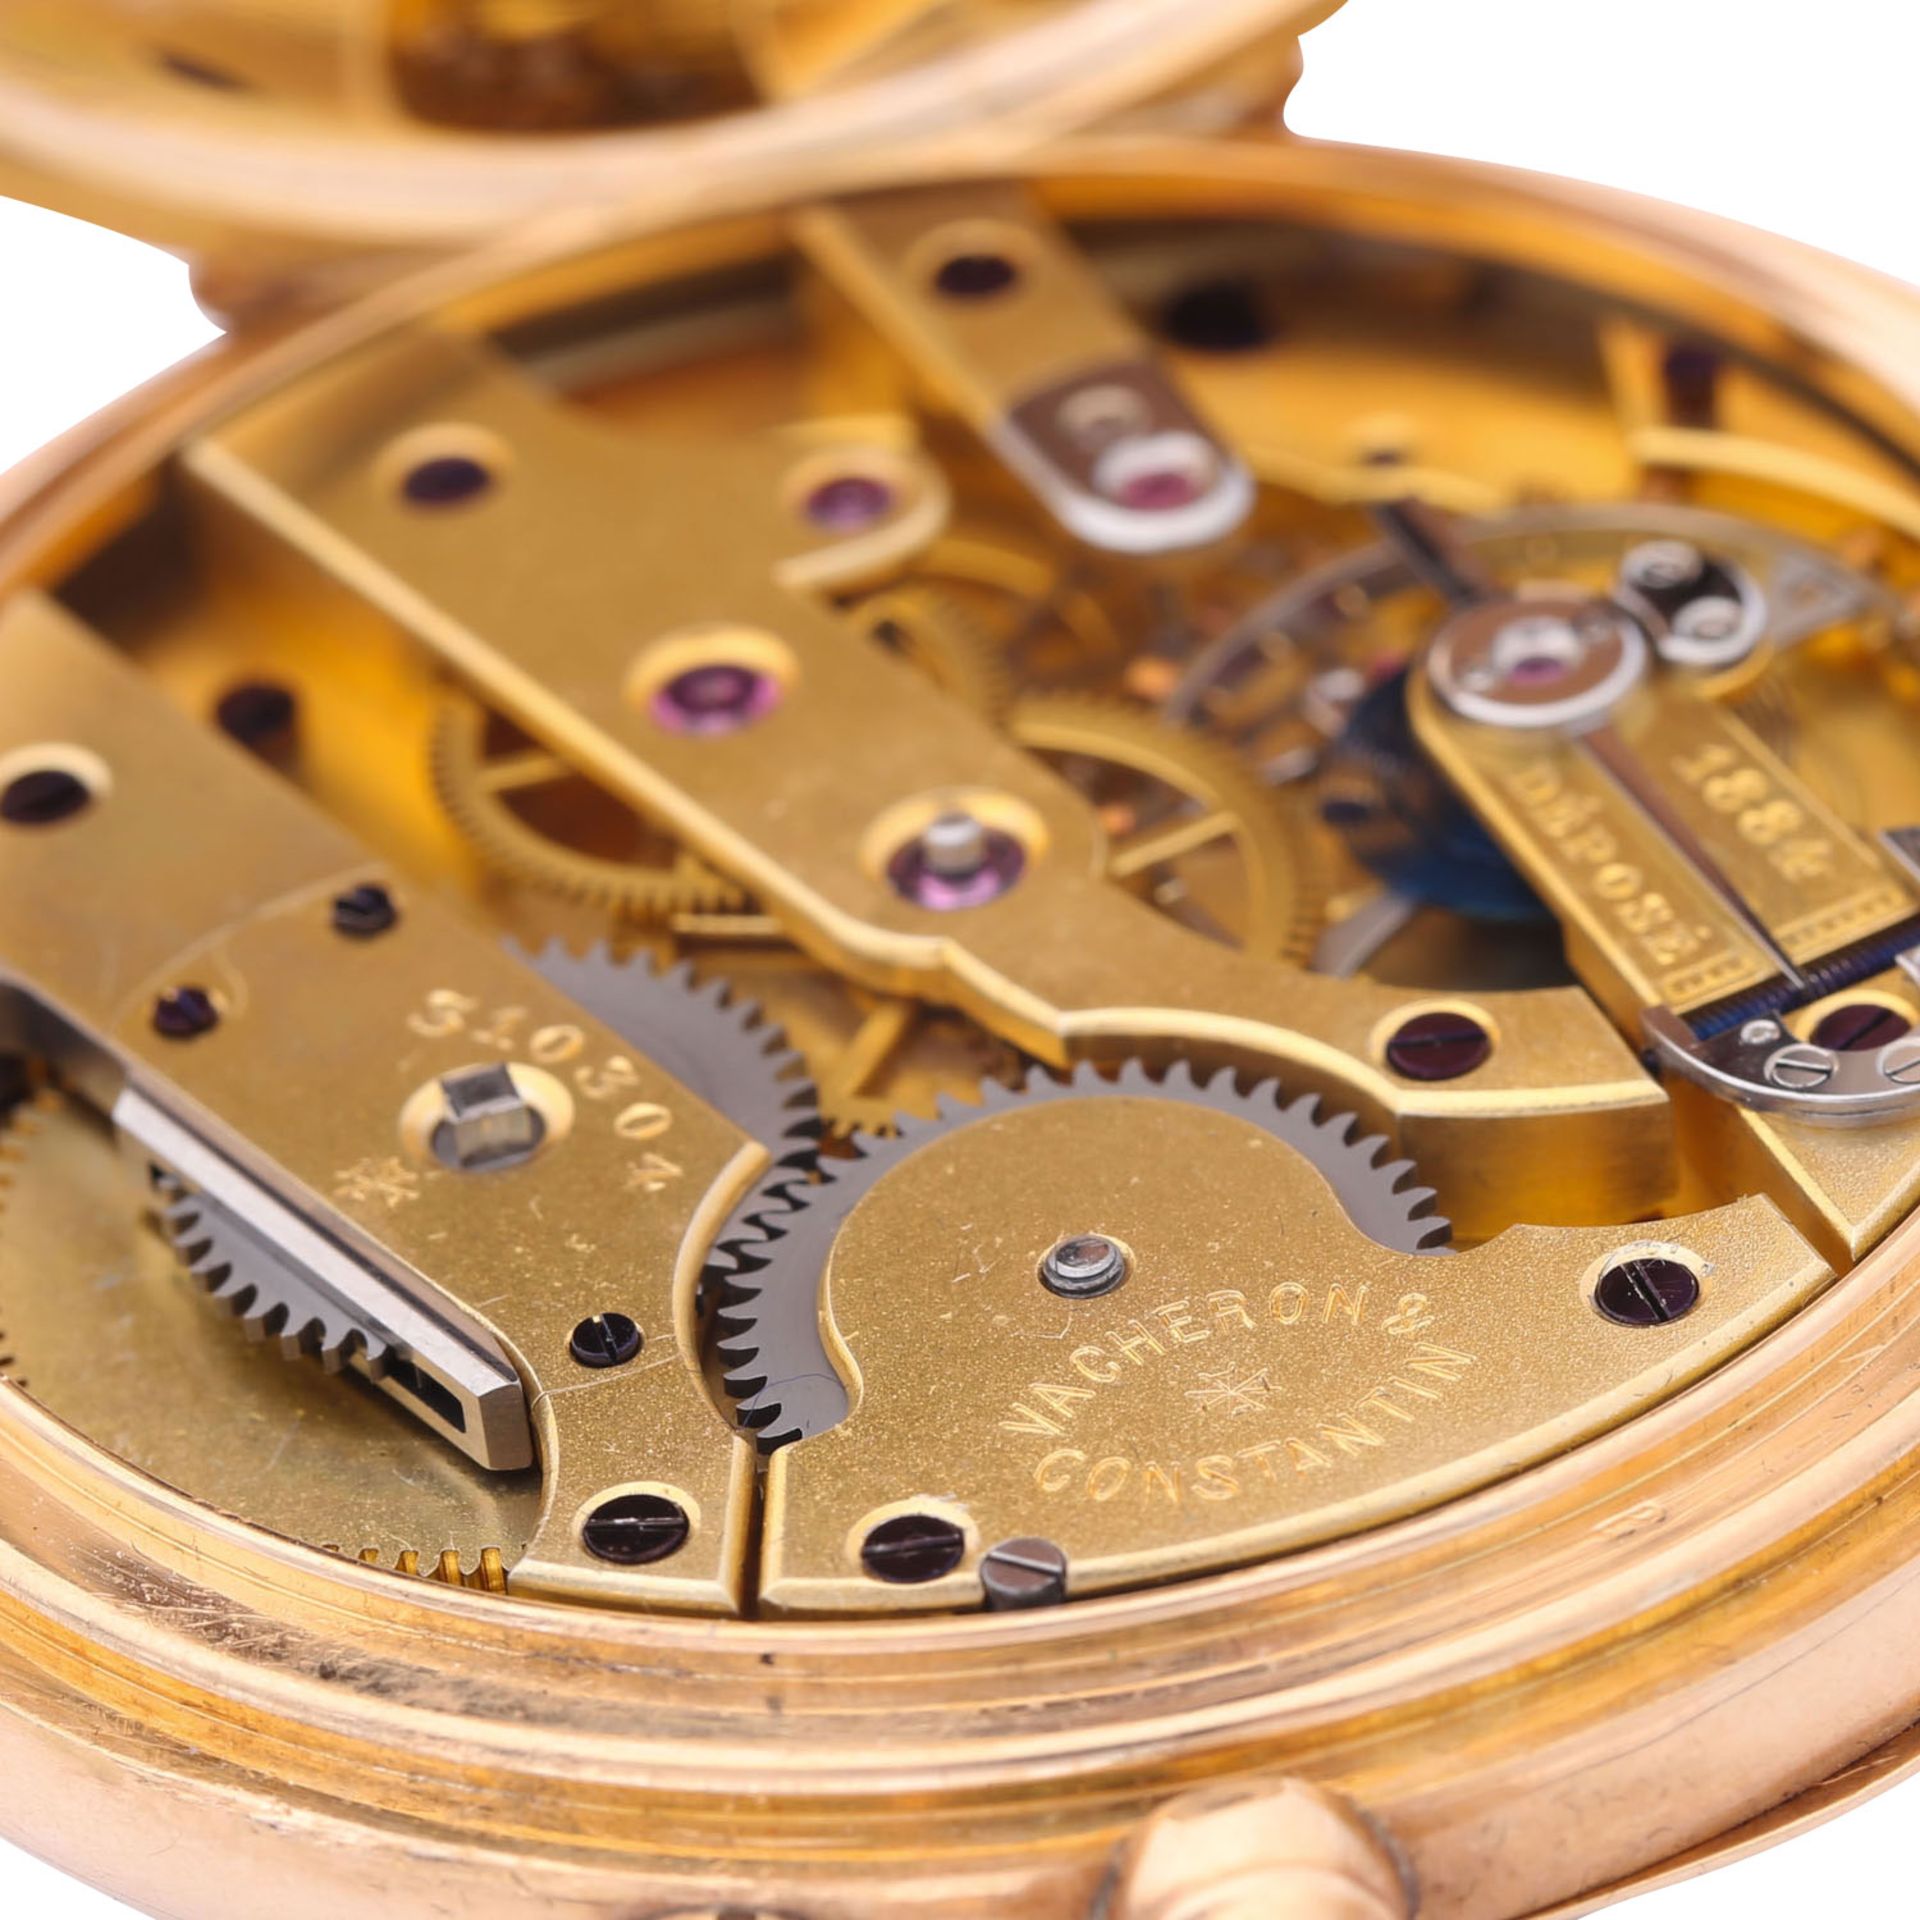 VACHERON CONSTANTIN seltene "Demi-Chronometre" offene Taschenuhr. Schweiz um 1900. - Bild 6 aus 10